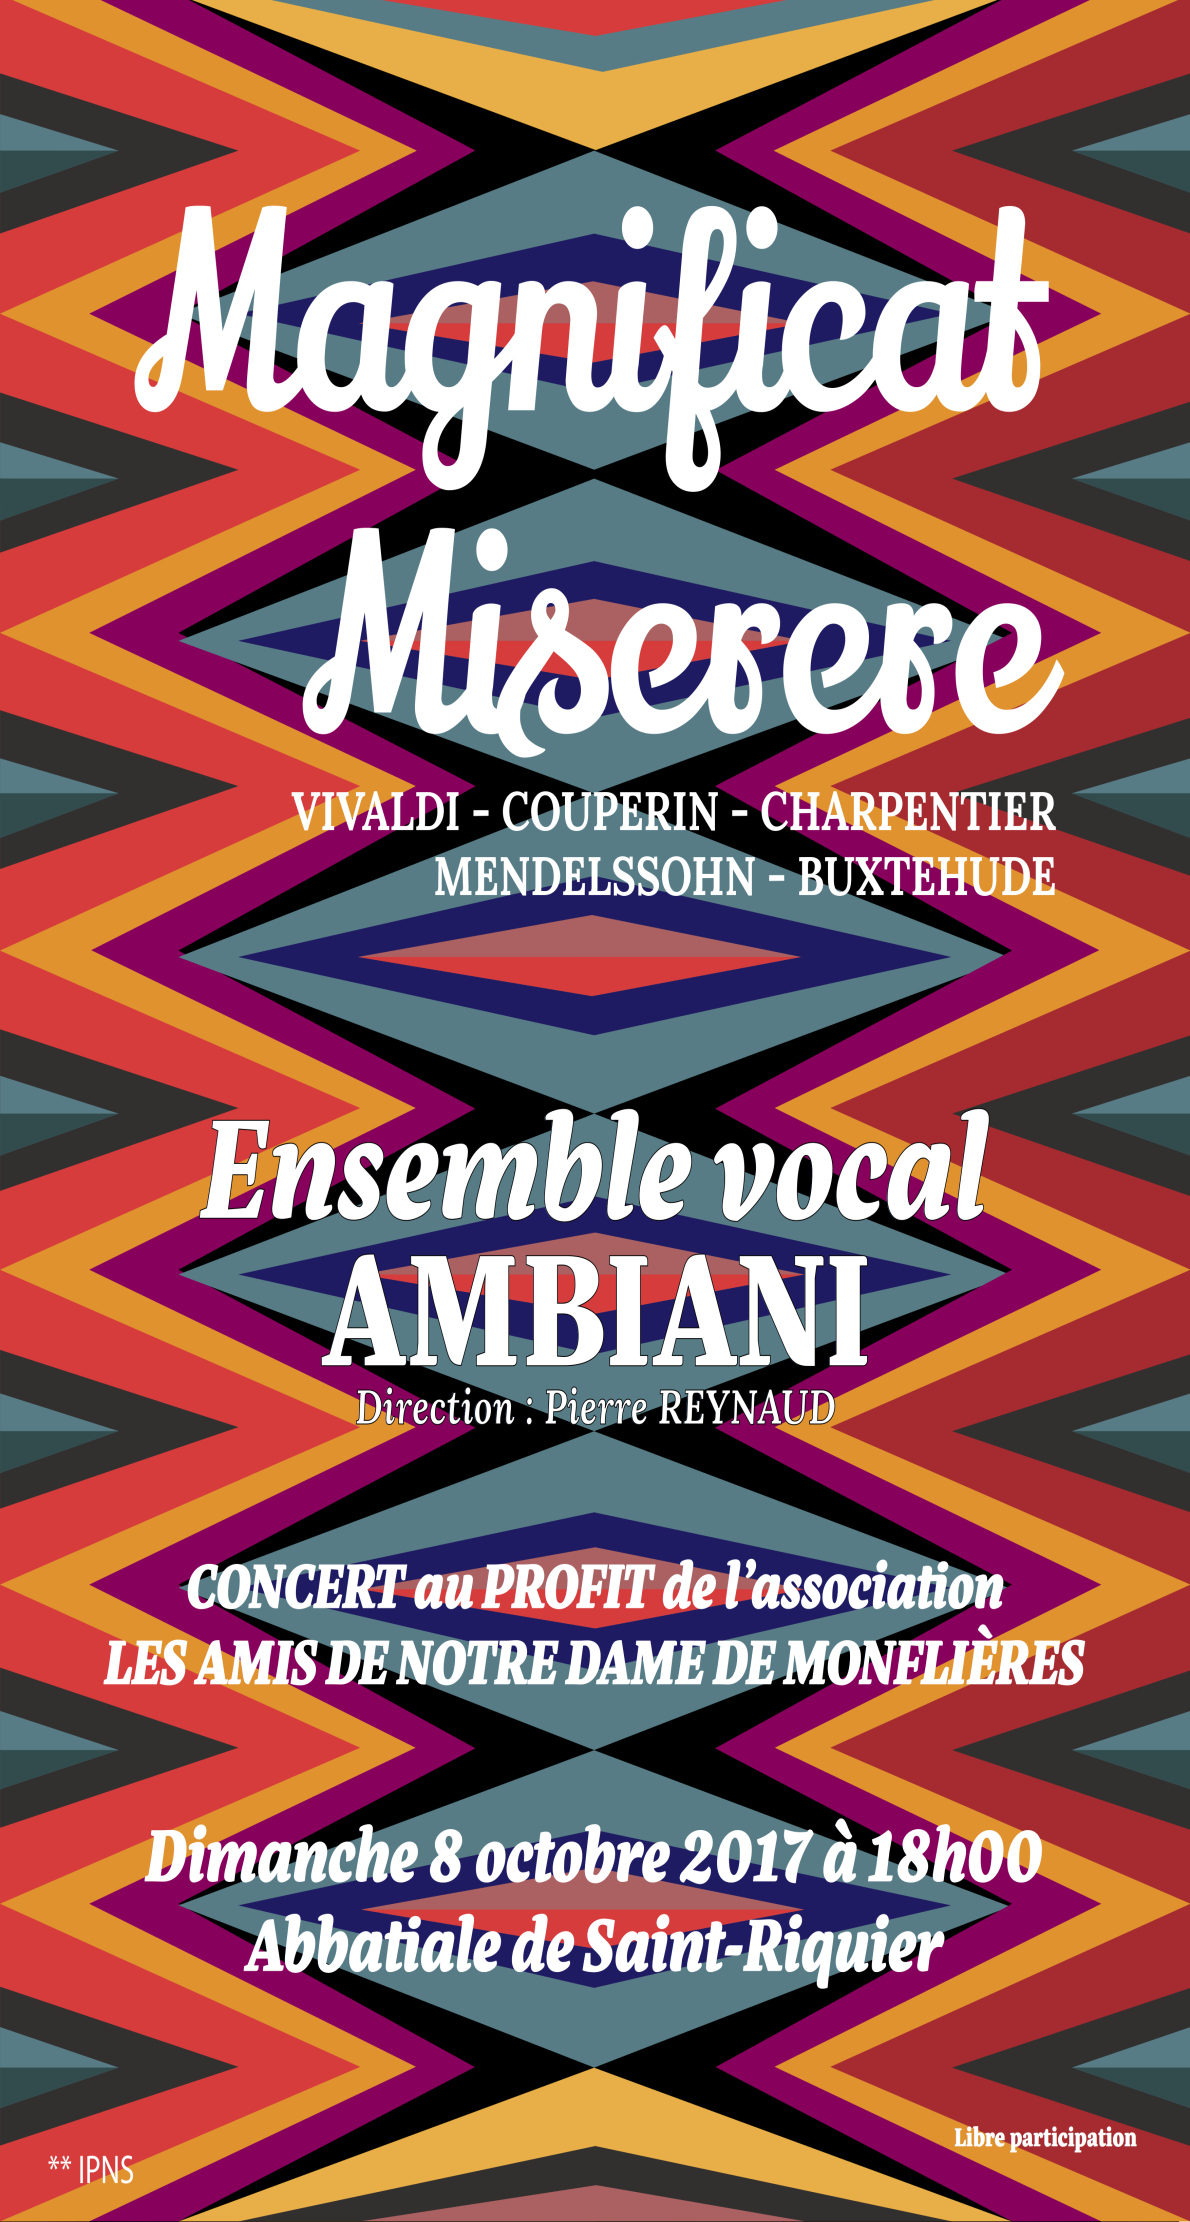 Concert de l’Ensemble vocal Ambiani le 8 octobre à abbatiale saint Riquier